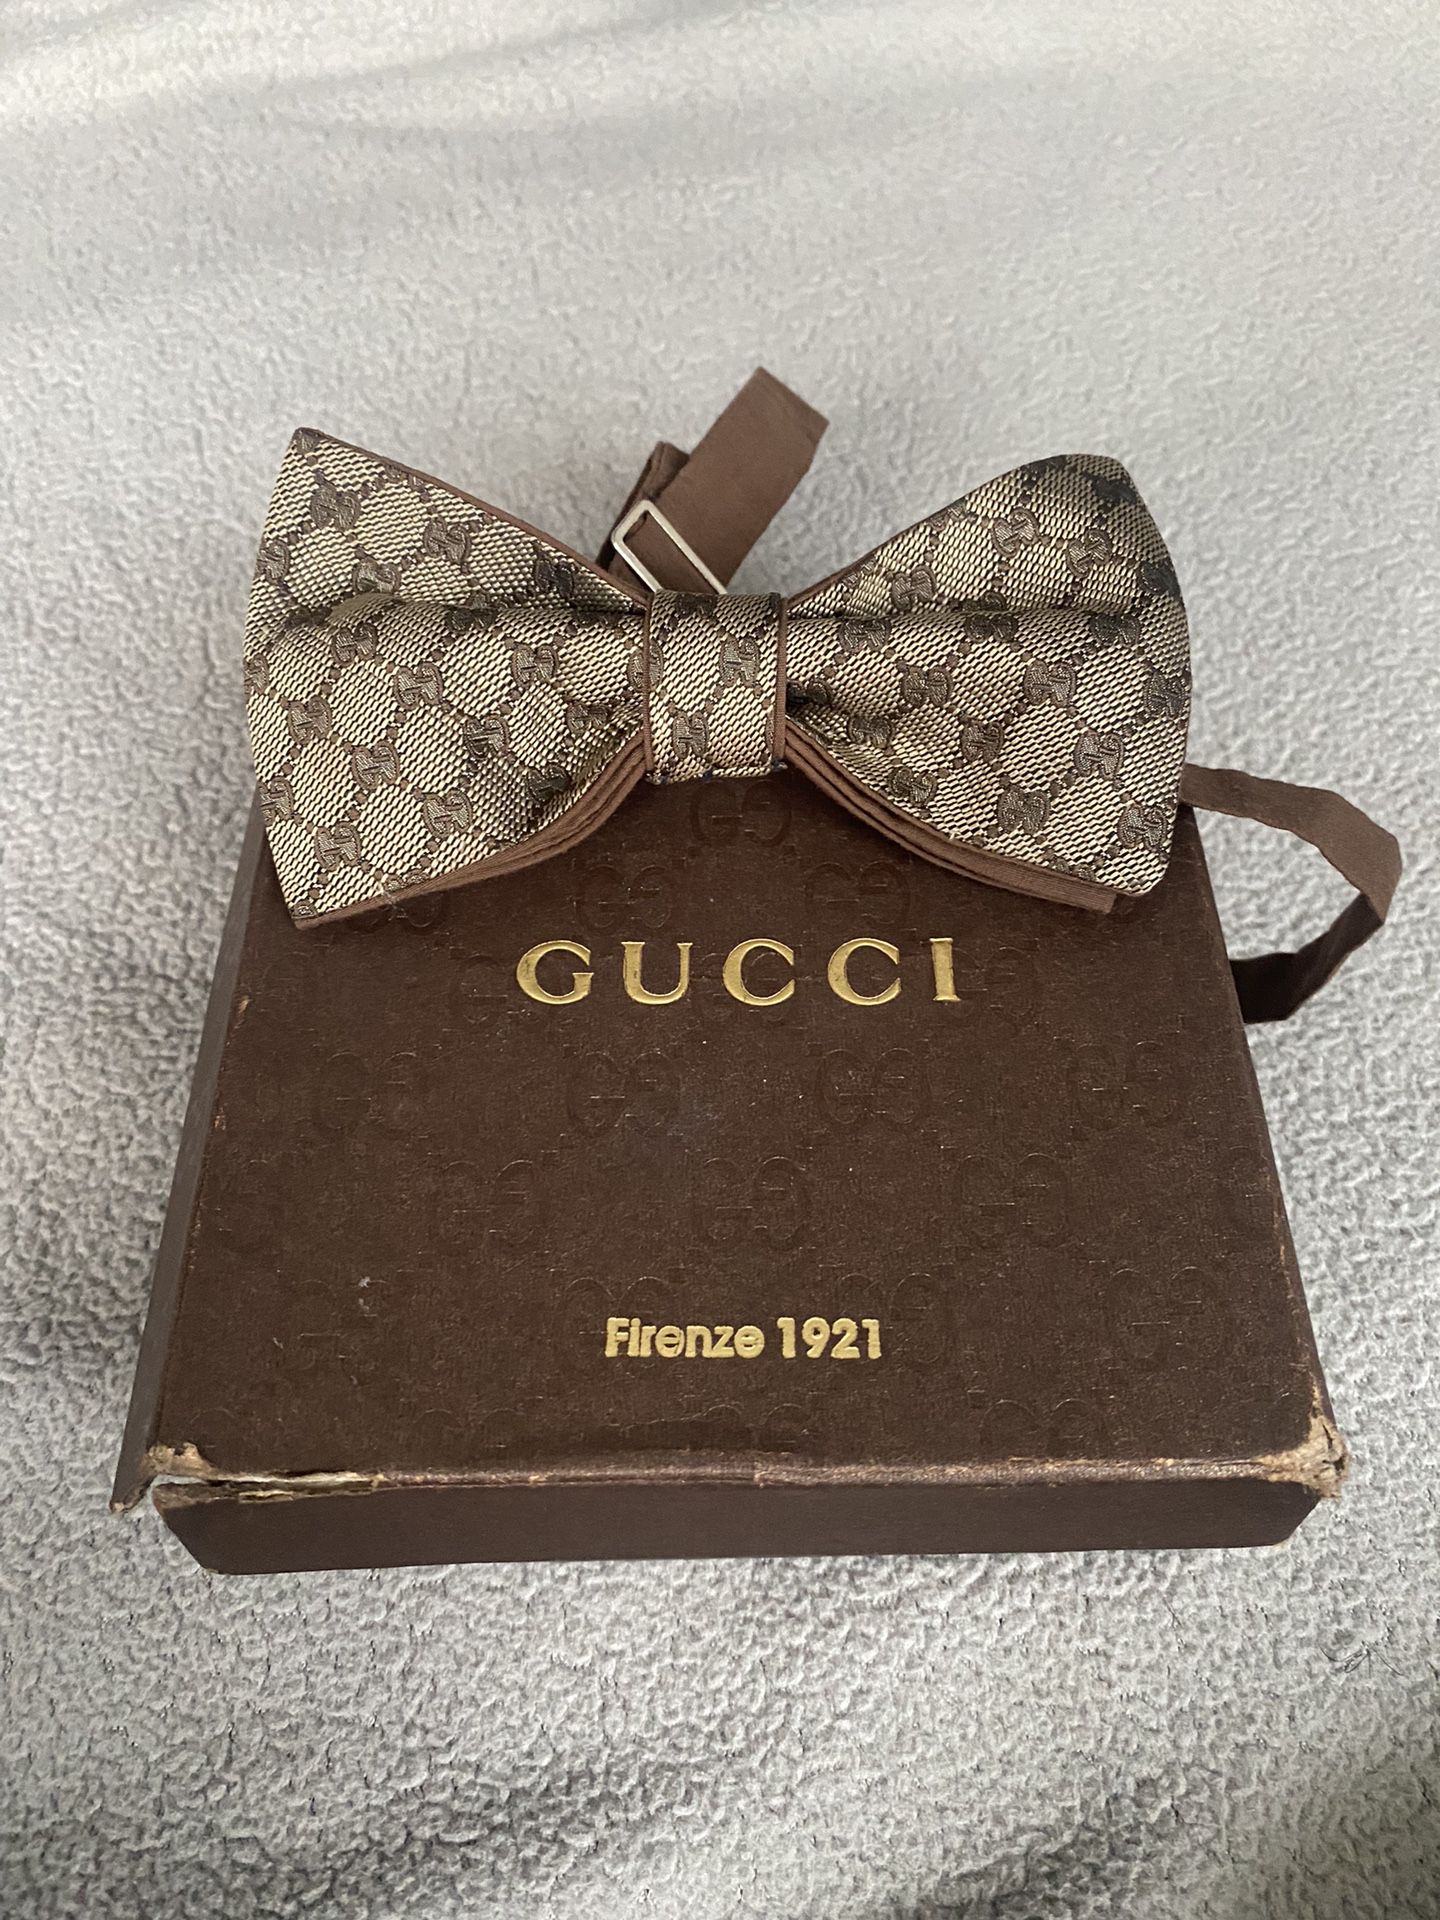 Gucci Bowtie  Accessories, Fashion, Gucci men